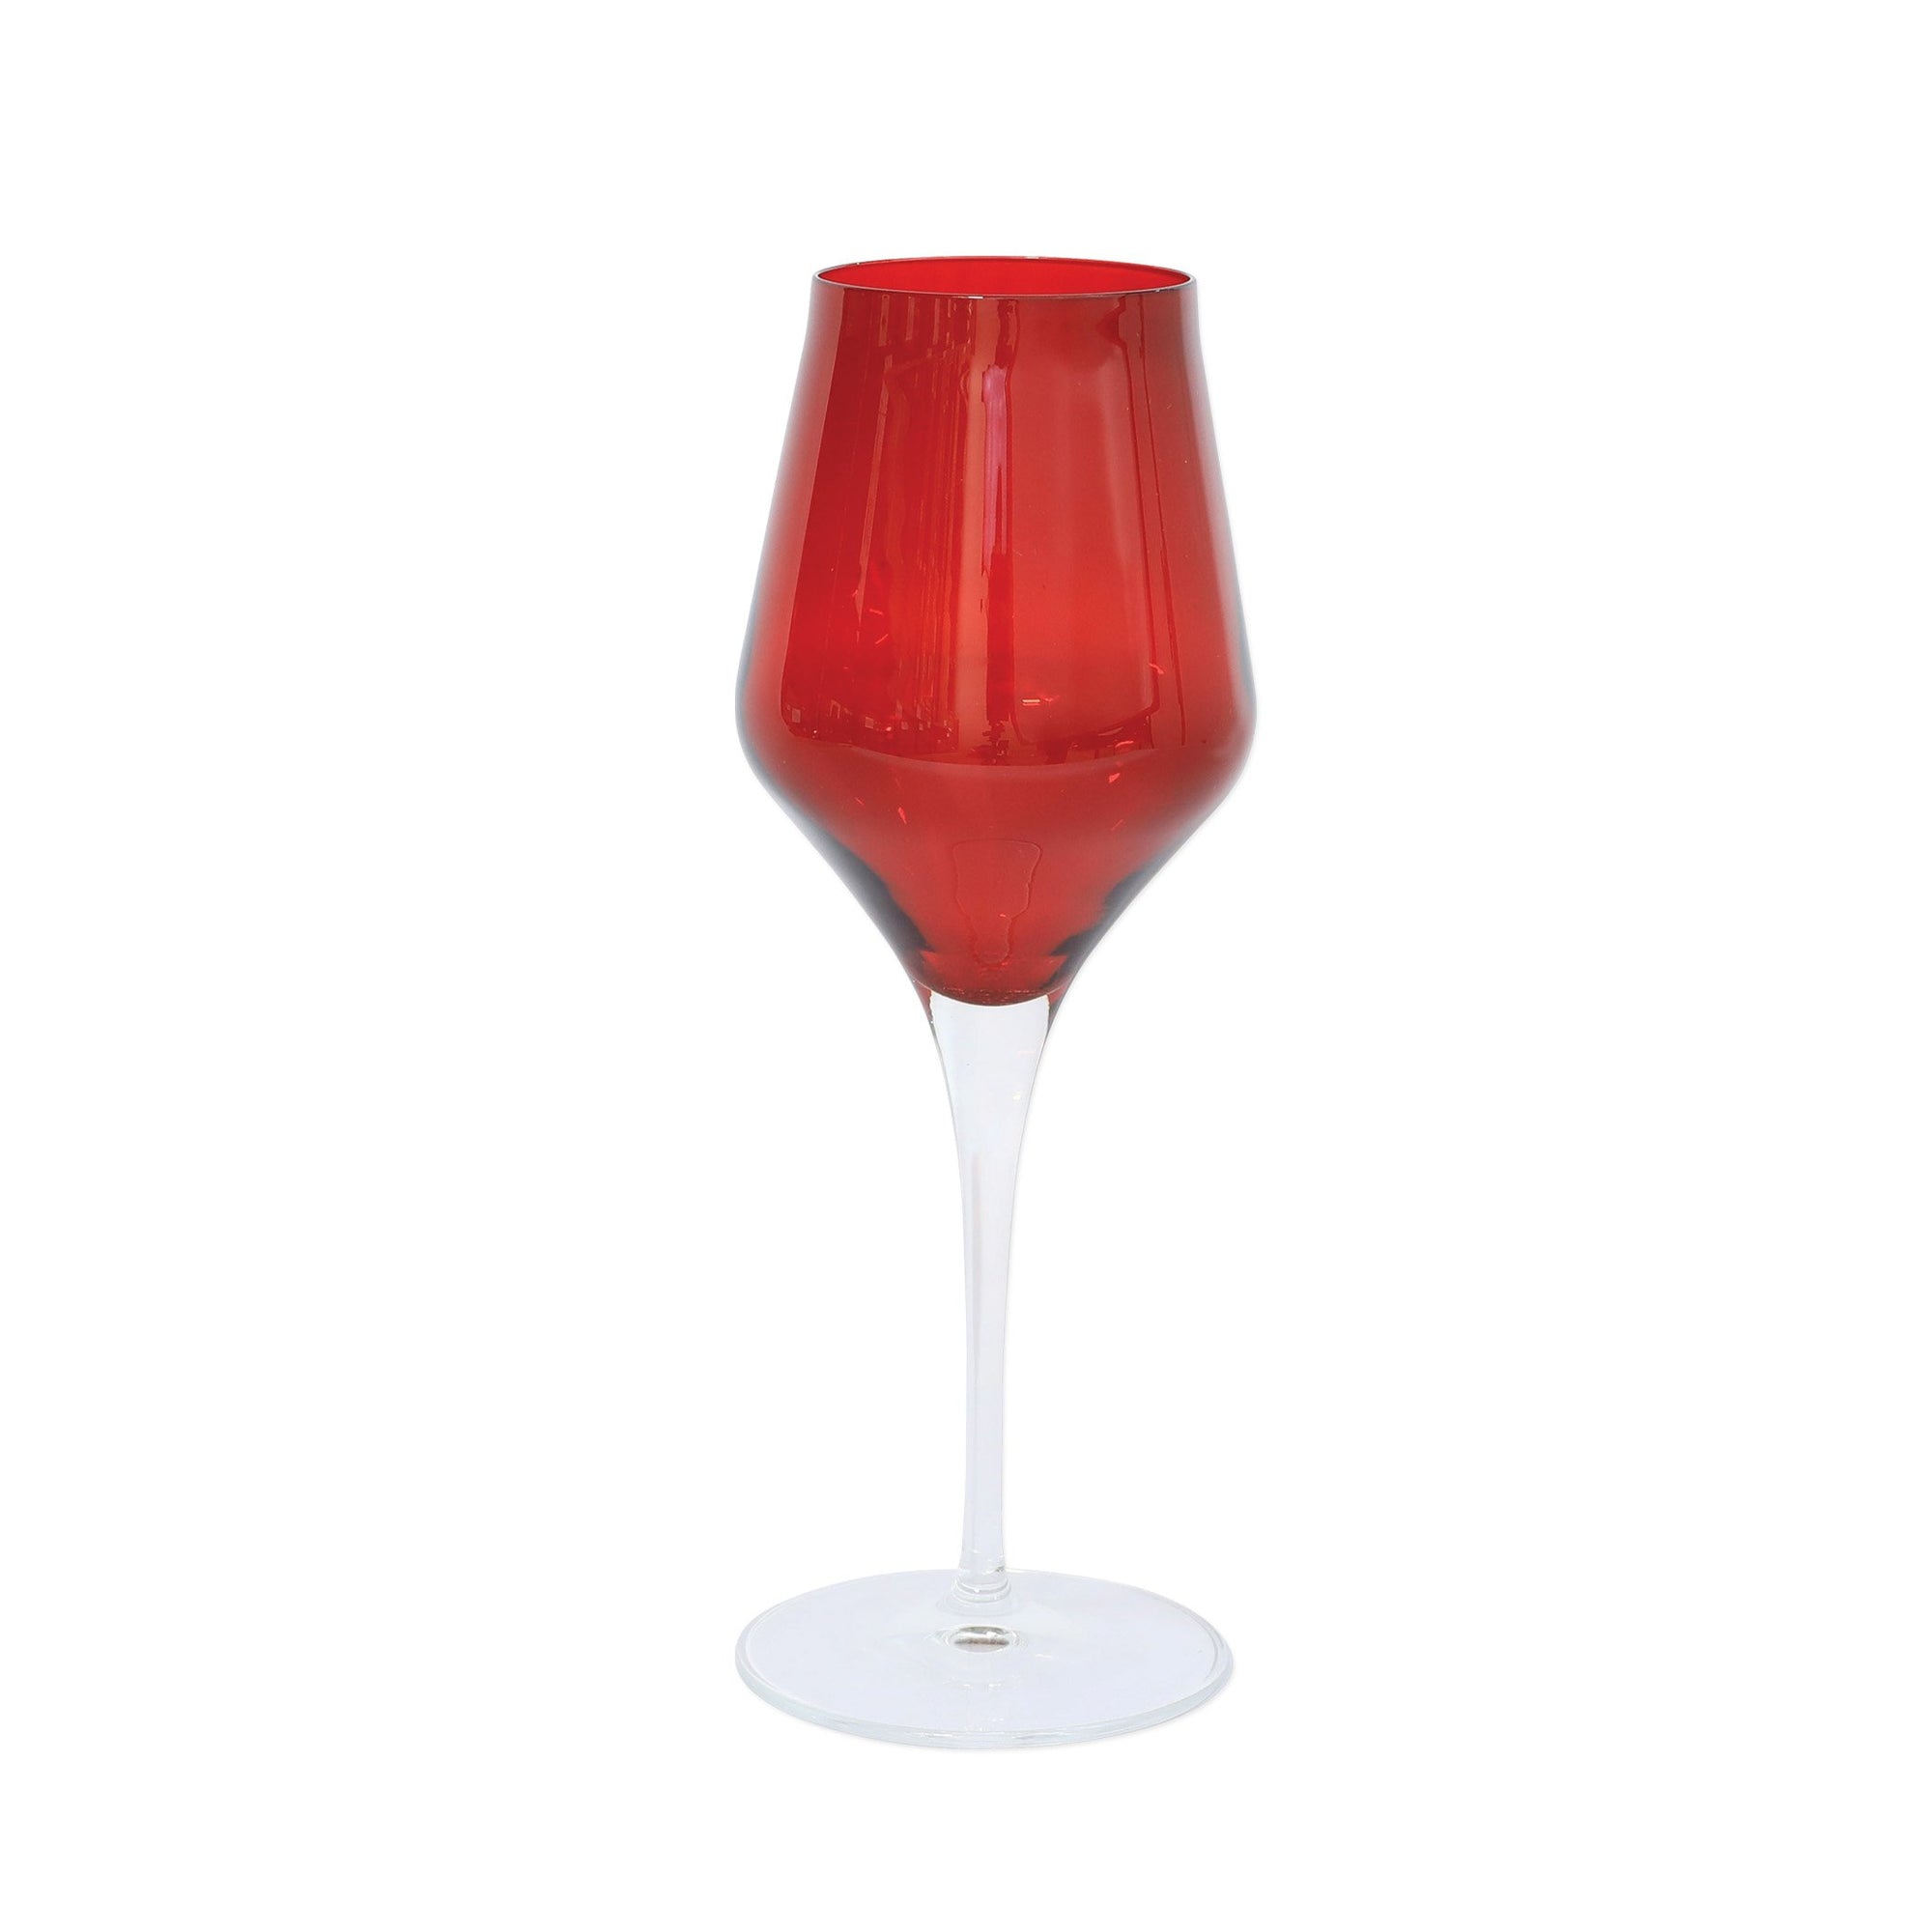 VIETRI: Contessa Red Wine Glass - Artistica.com